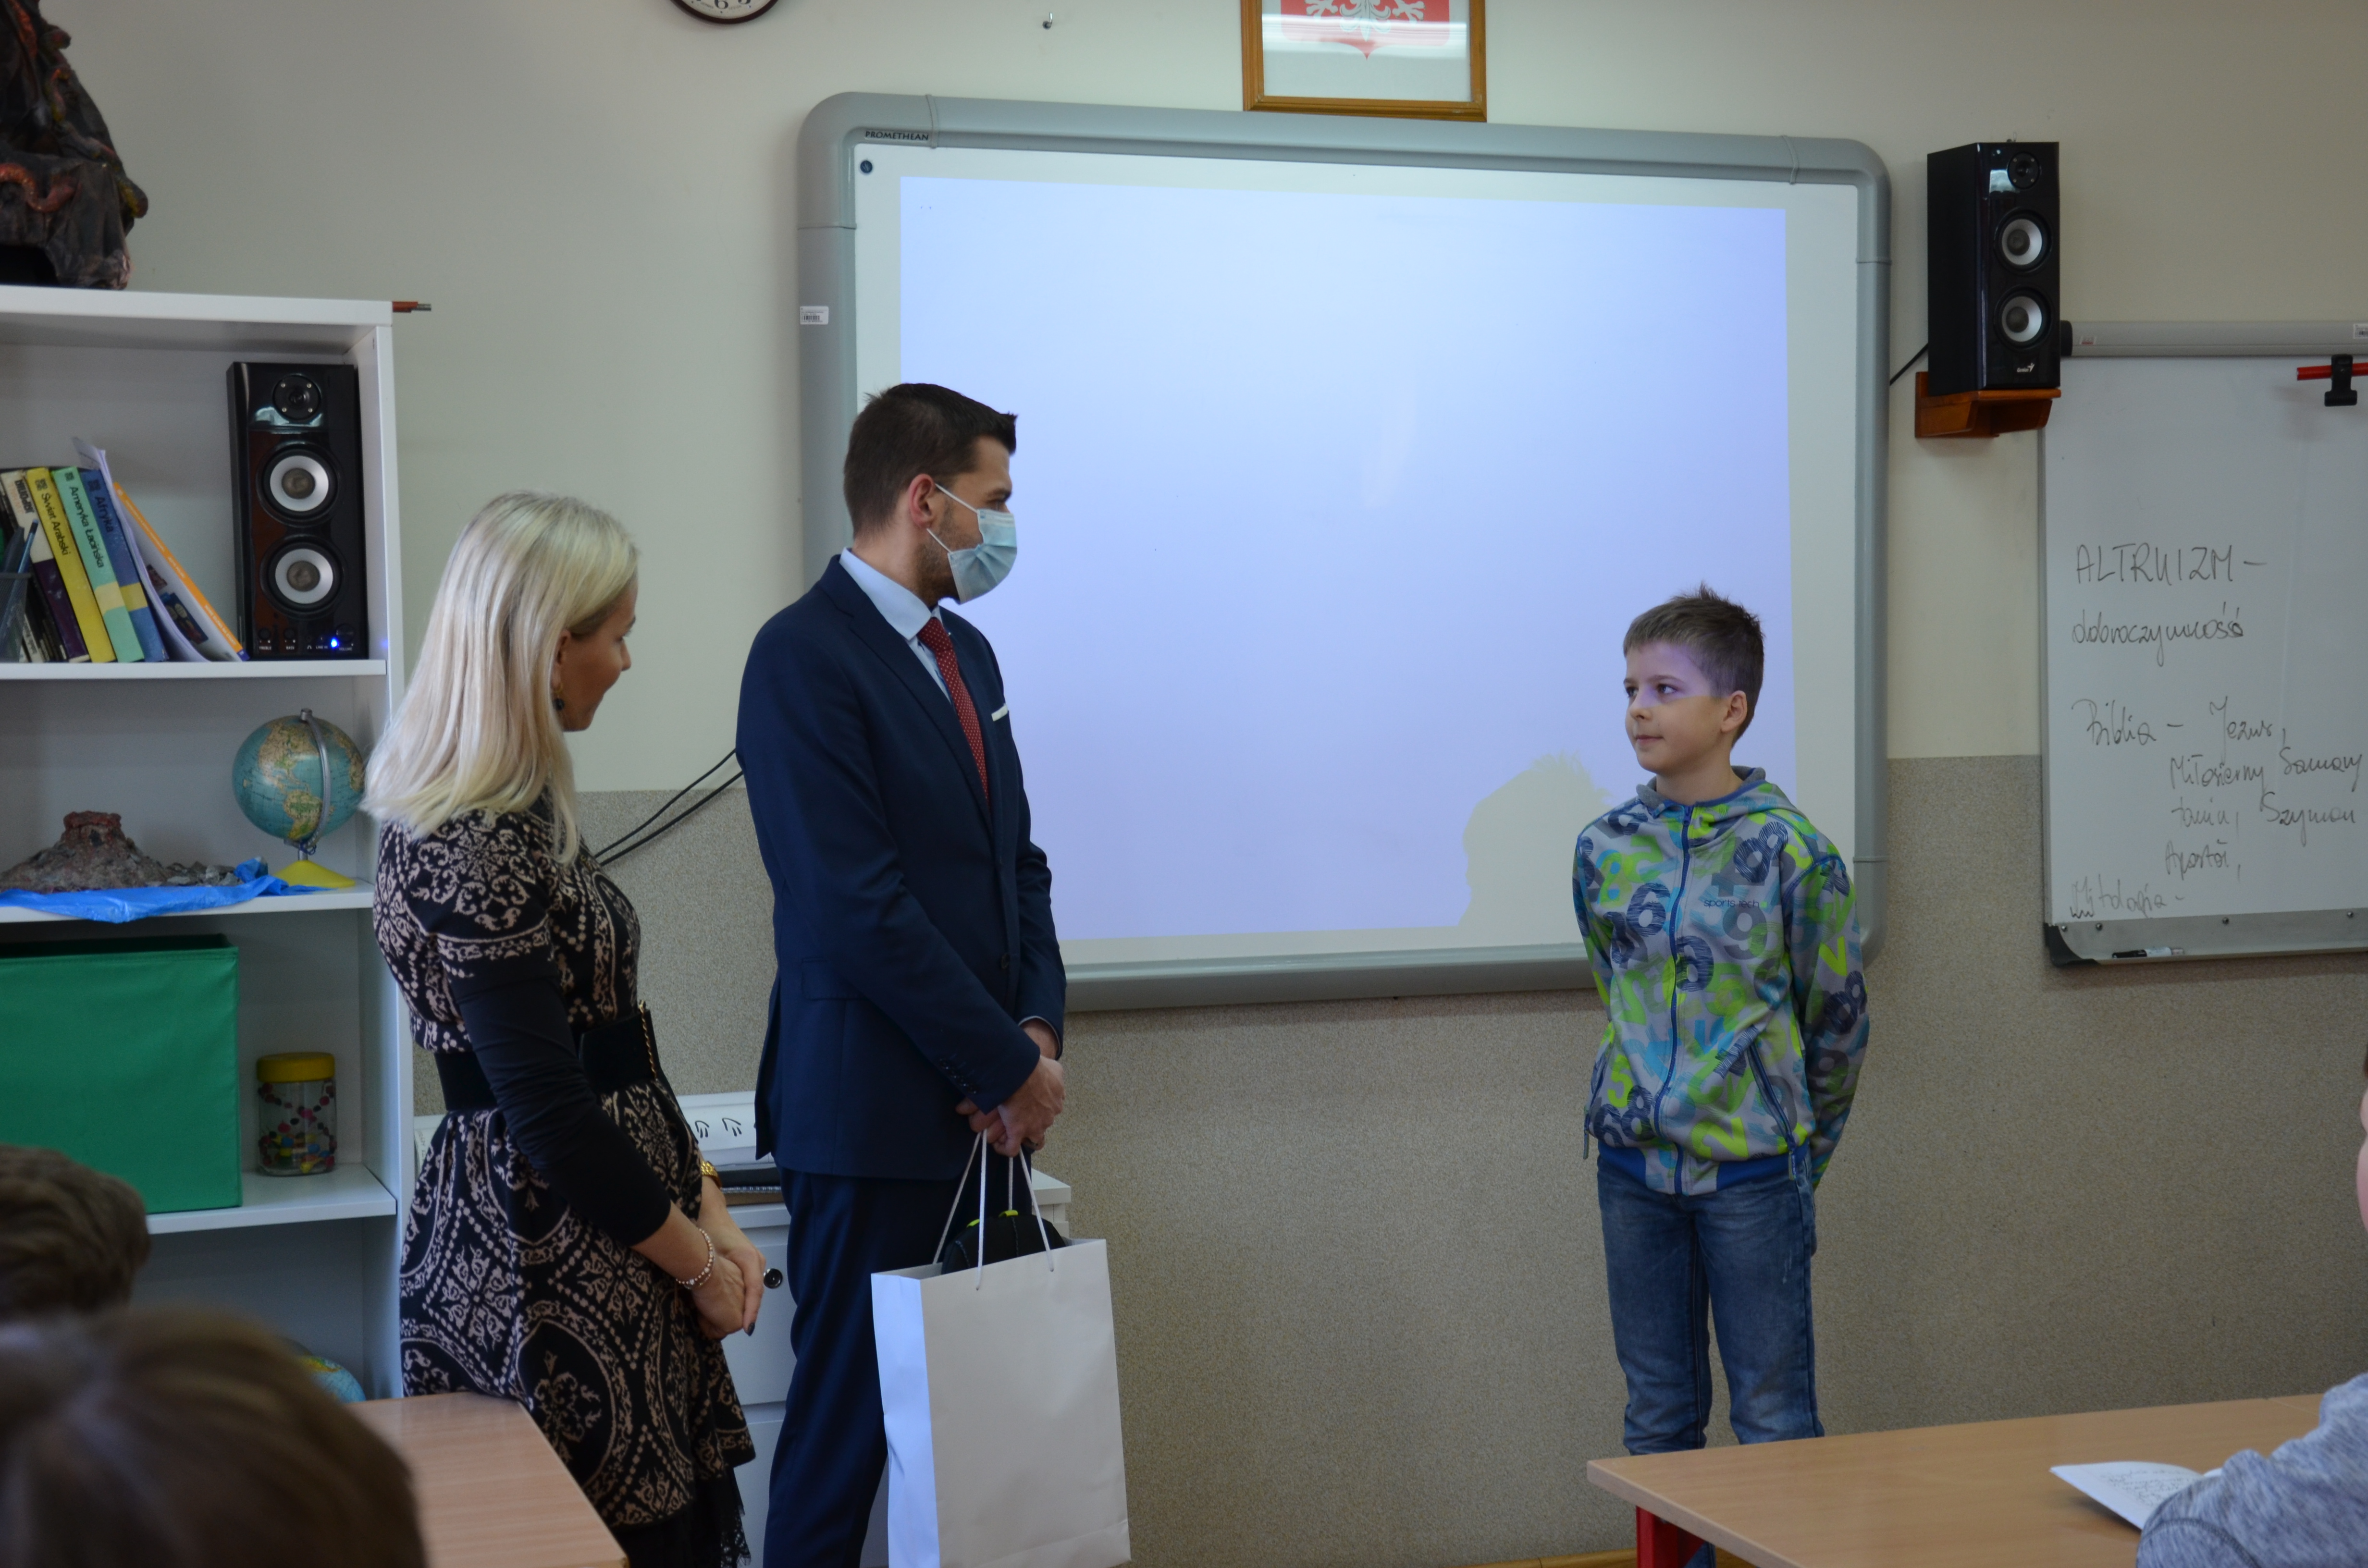 Trzy osoby stojące w sali szkolnej. Dwie z lewej, kobieta i mężczyzna, wręczają upominek nastolatkowi.